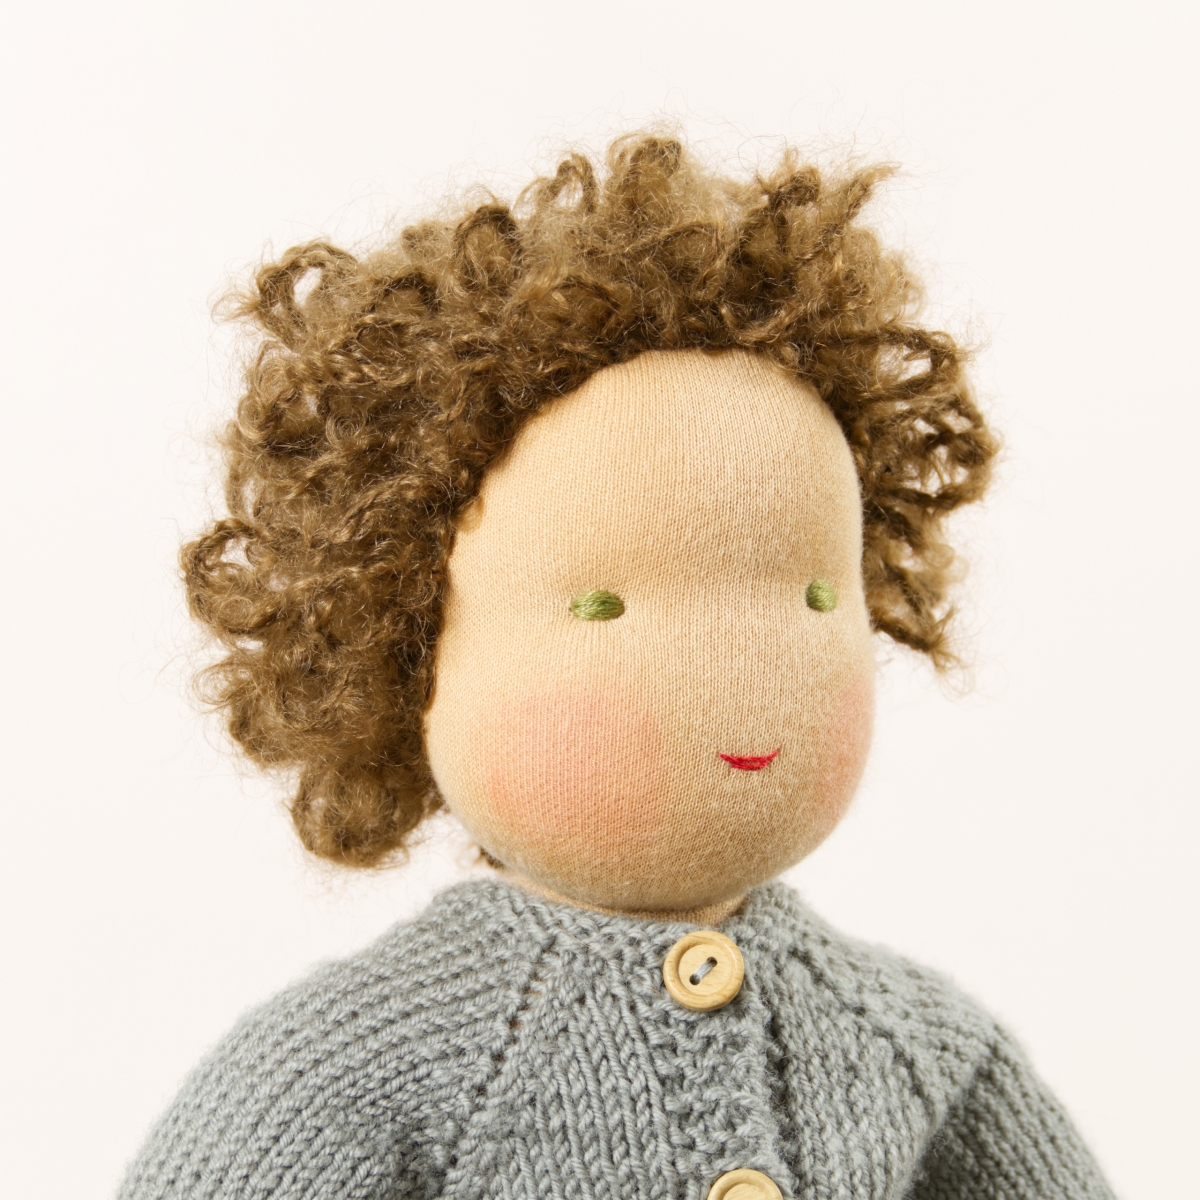 Puppe mit hellem Hautton nach Waldorf-Art, kurze braune Haare, gekleidet in grauen Strickanzug